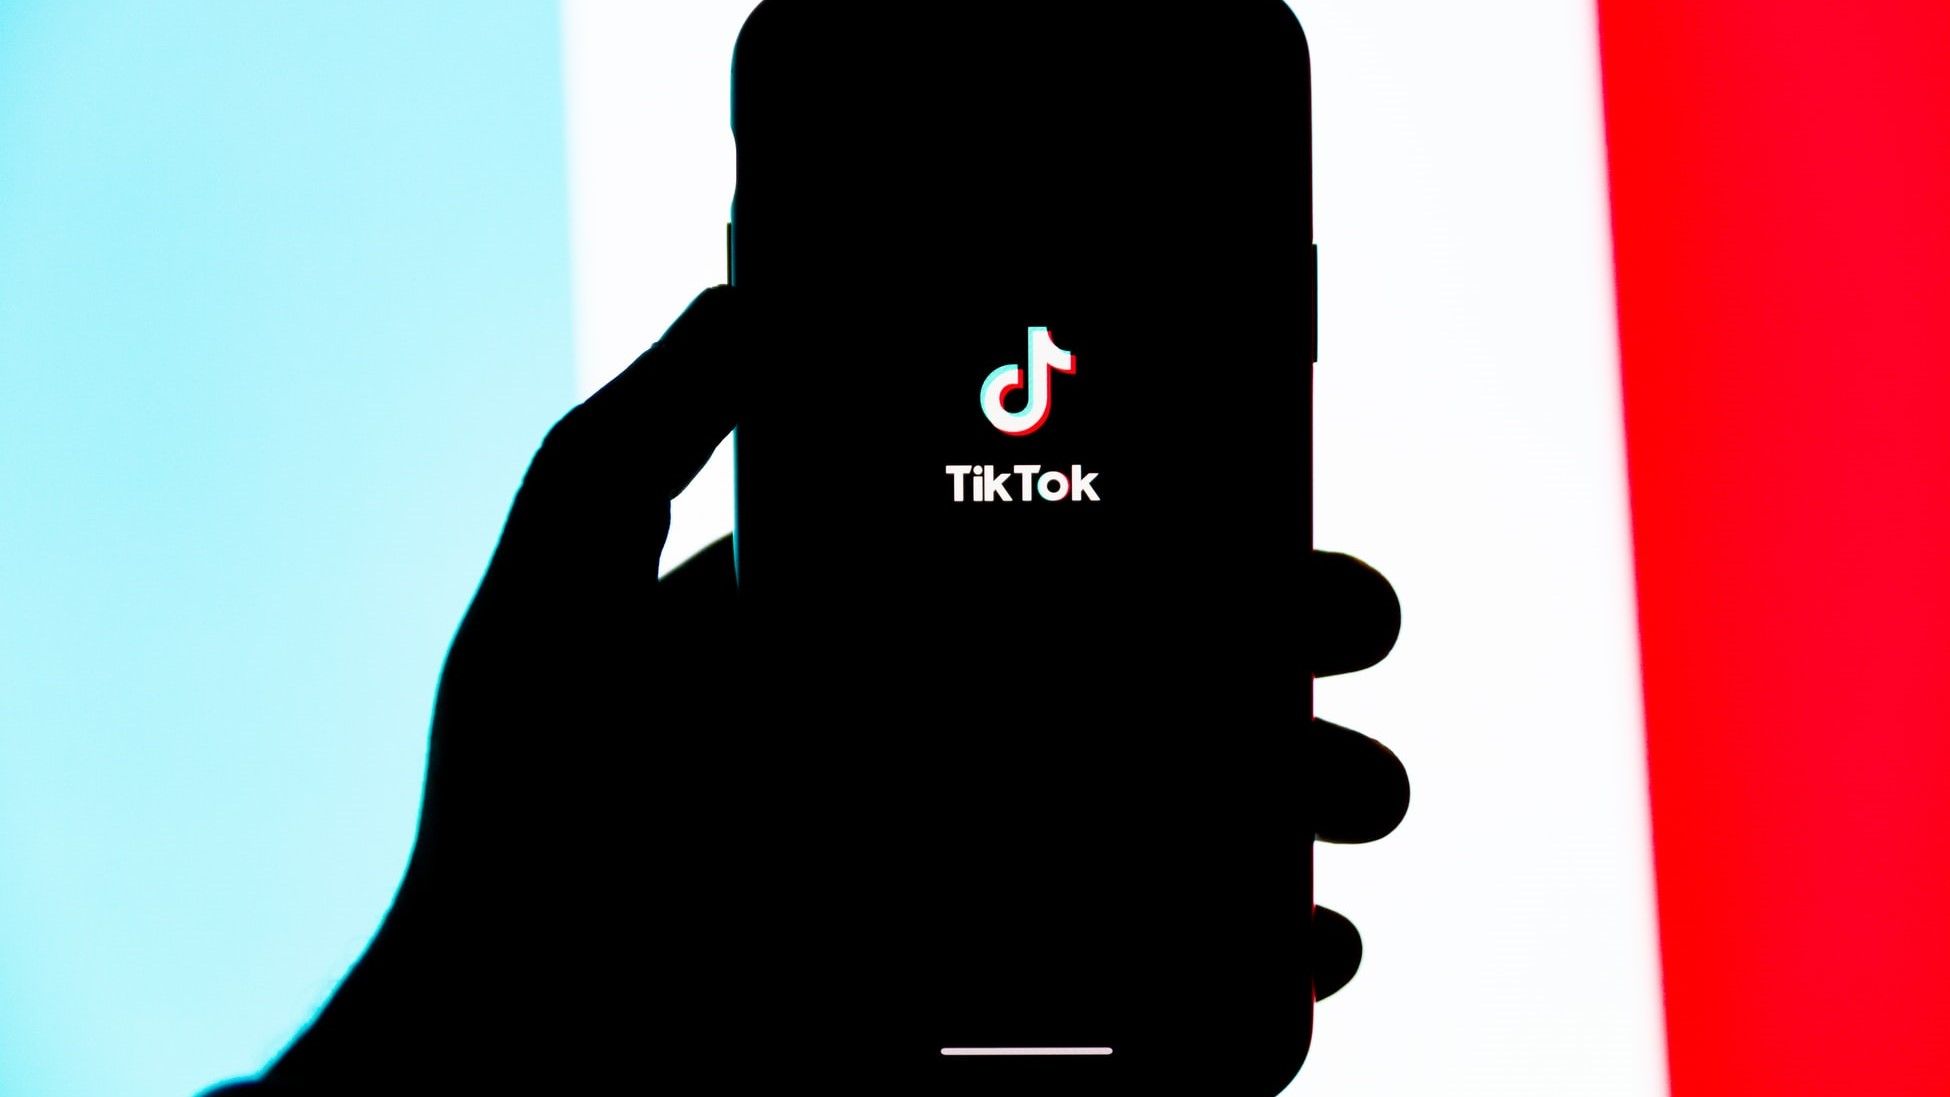 TikTok Logo on Phone Silhouette